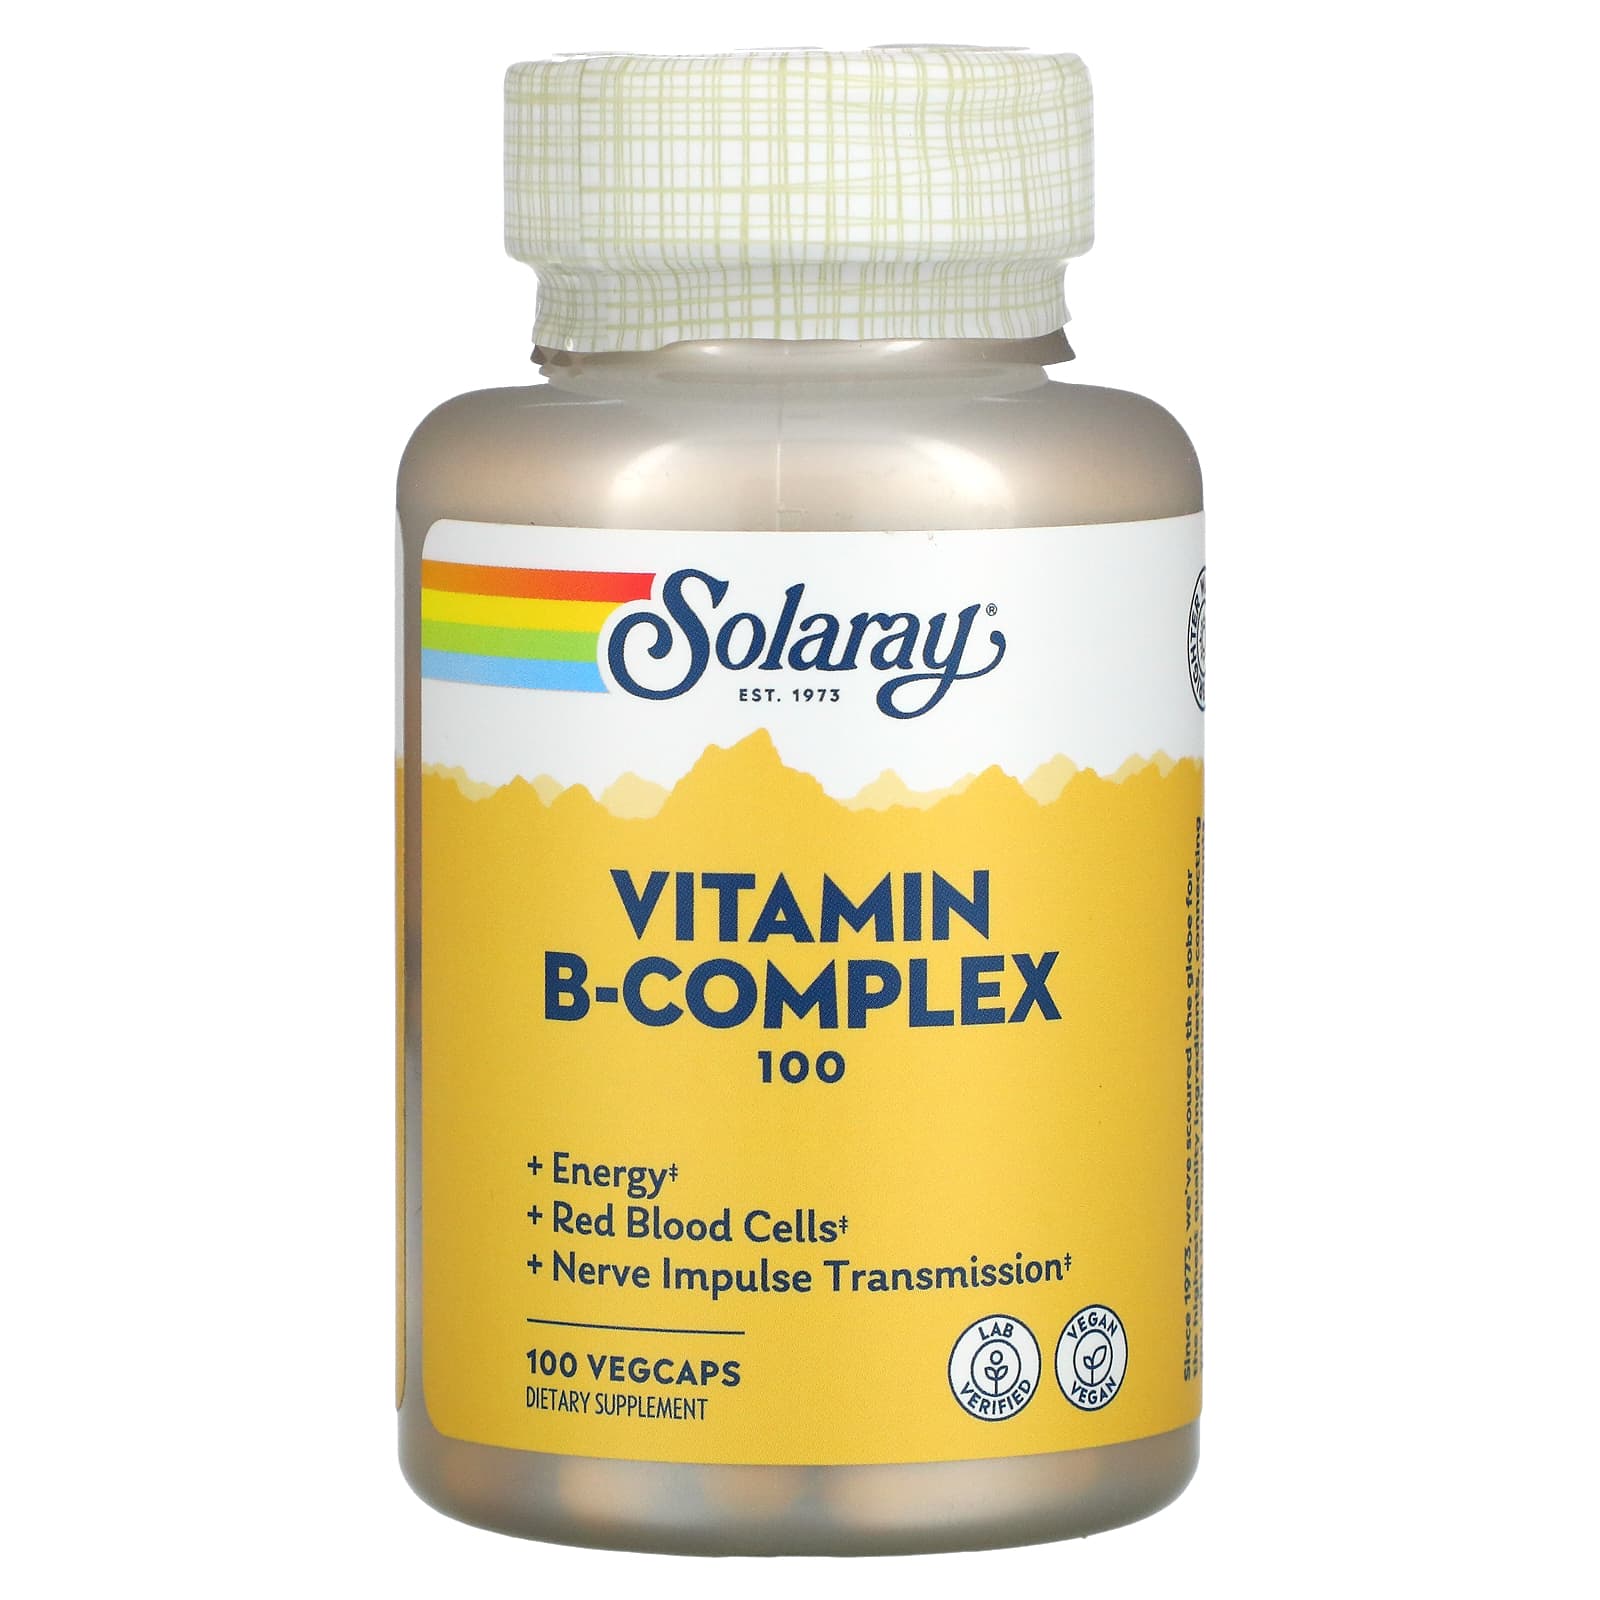 Solaray B-комплекс 100 100 вегетарианских капсул